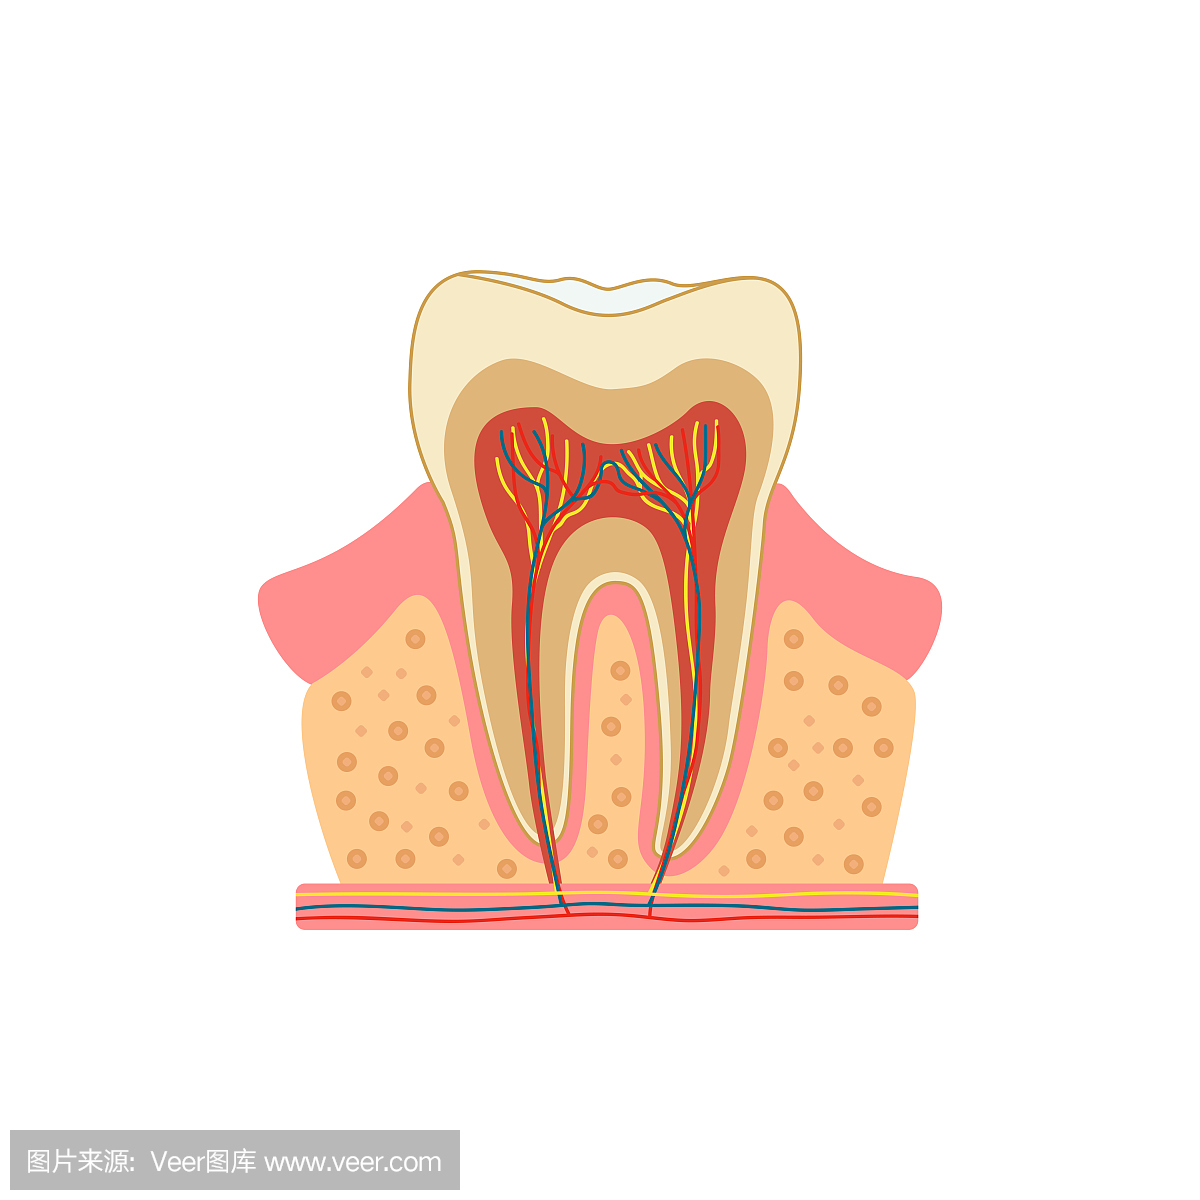 切割的牙齿。牙齿内部横截面结构的医学图。矢